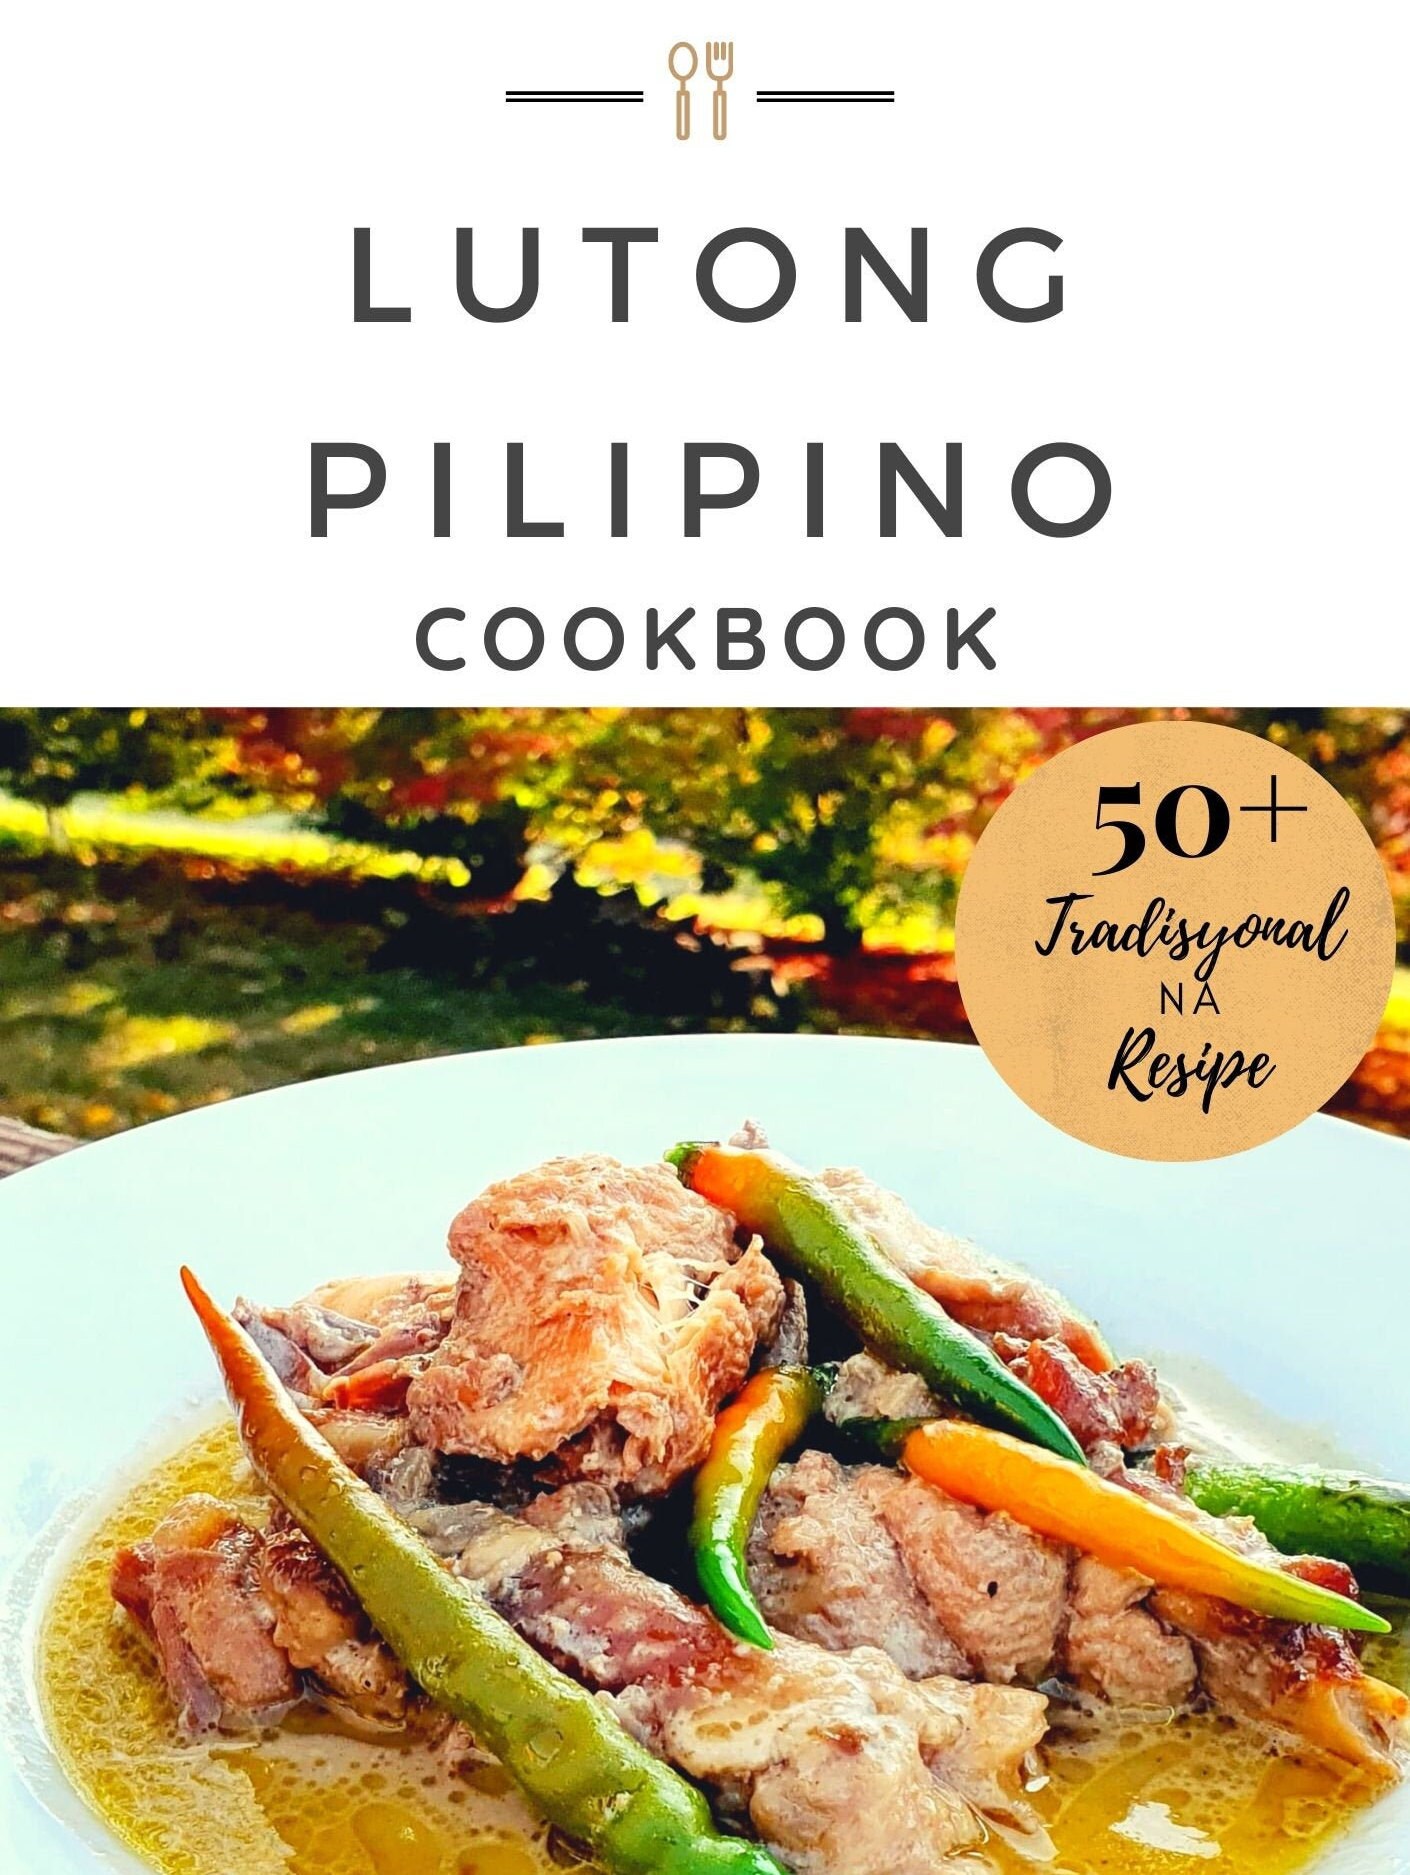 Lutong Pilipino Cookbook